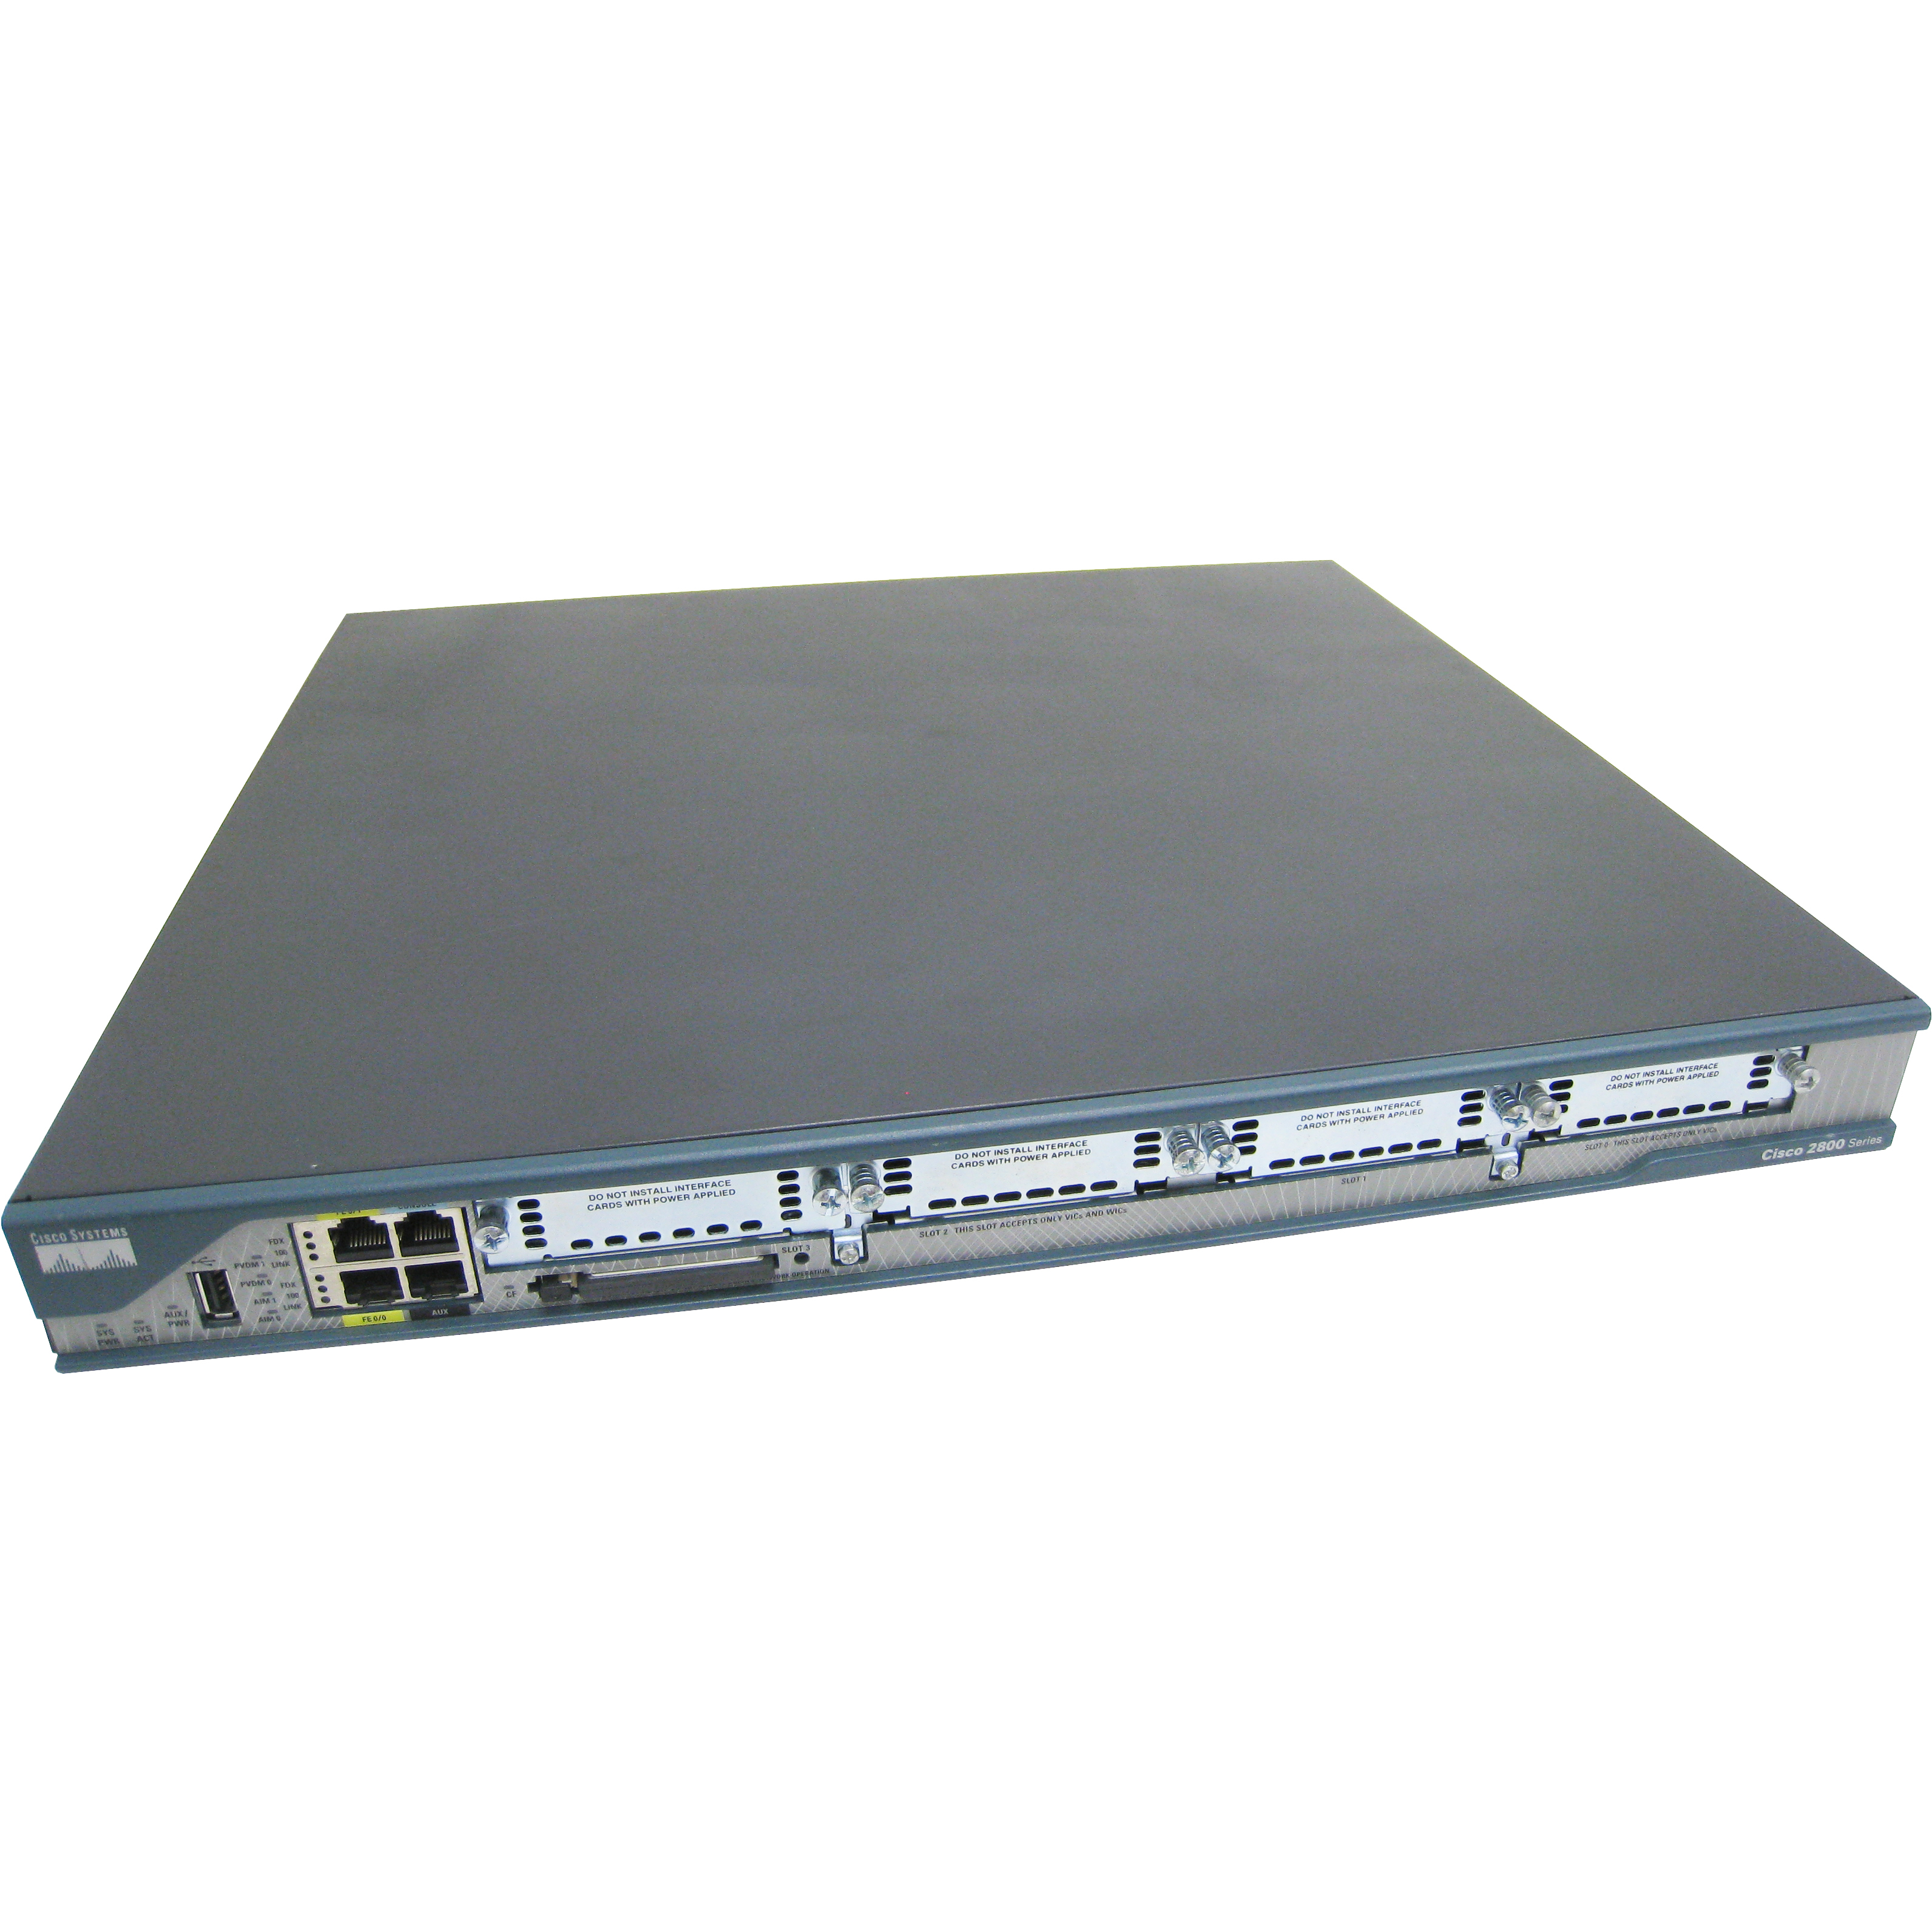 Cisco C2801-VSEC-SRST/K9